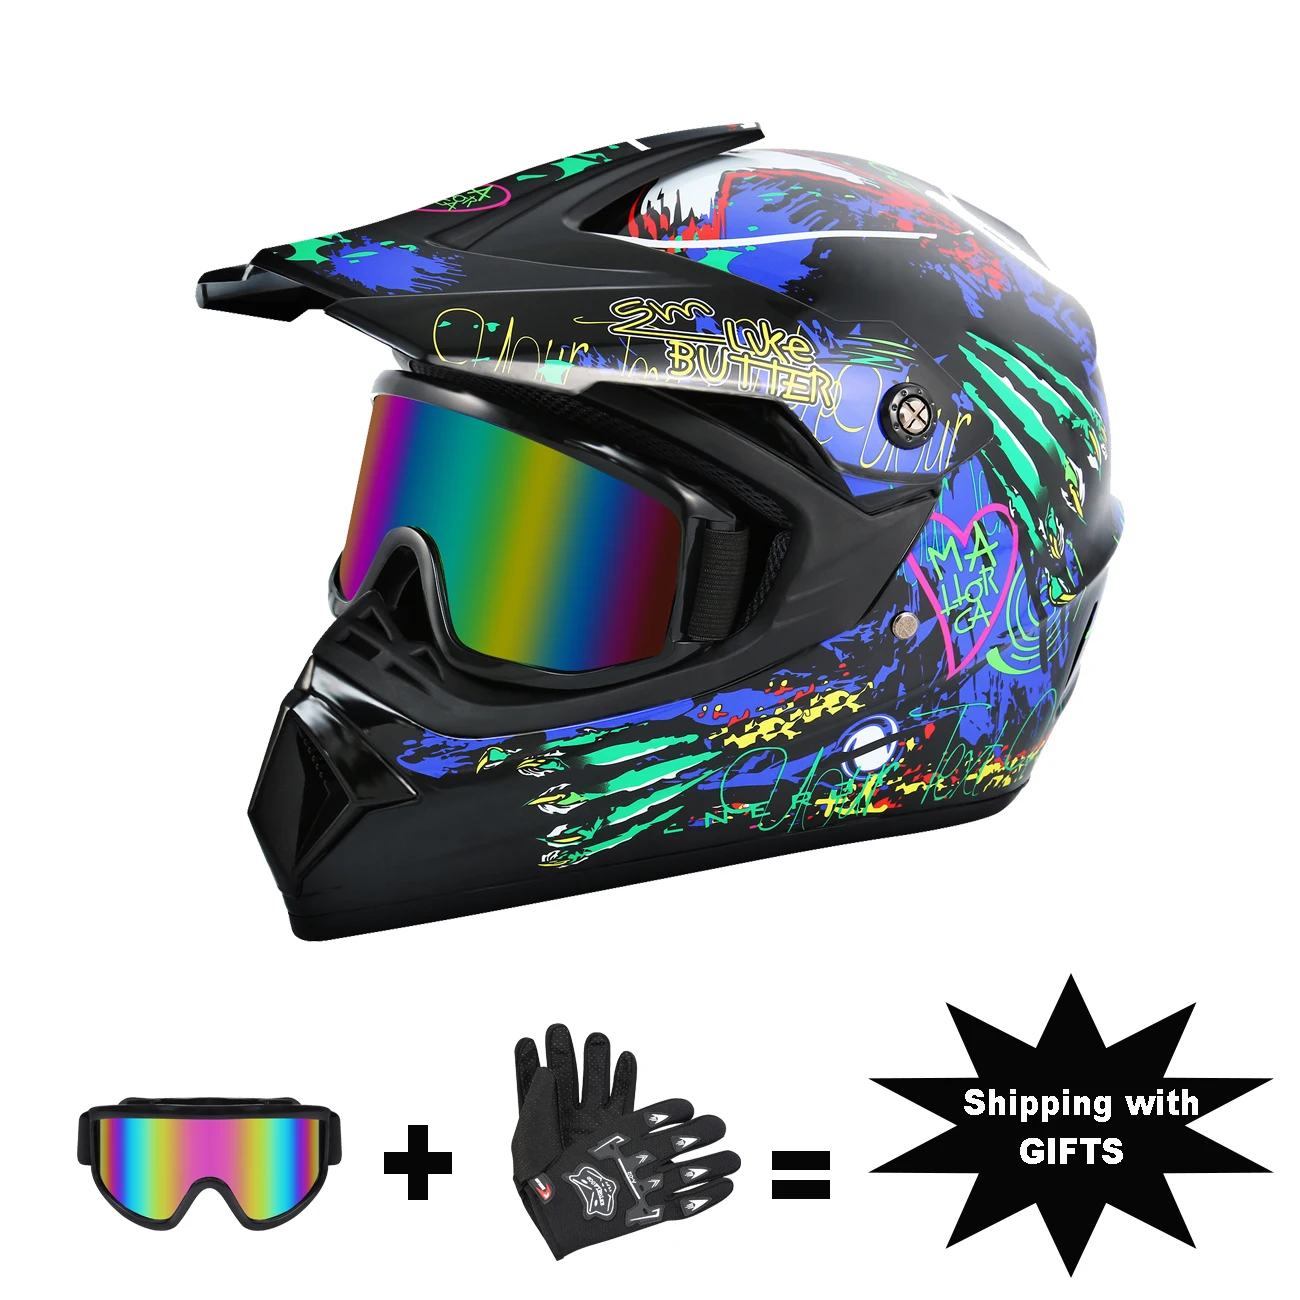 Casco moto Honhill Off Road integrale con guanti per occhiali casco Motocross professionale per Dirt Bike ATV nero lucido